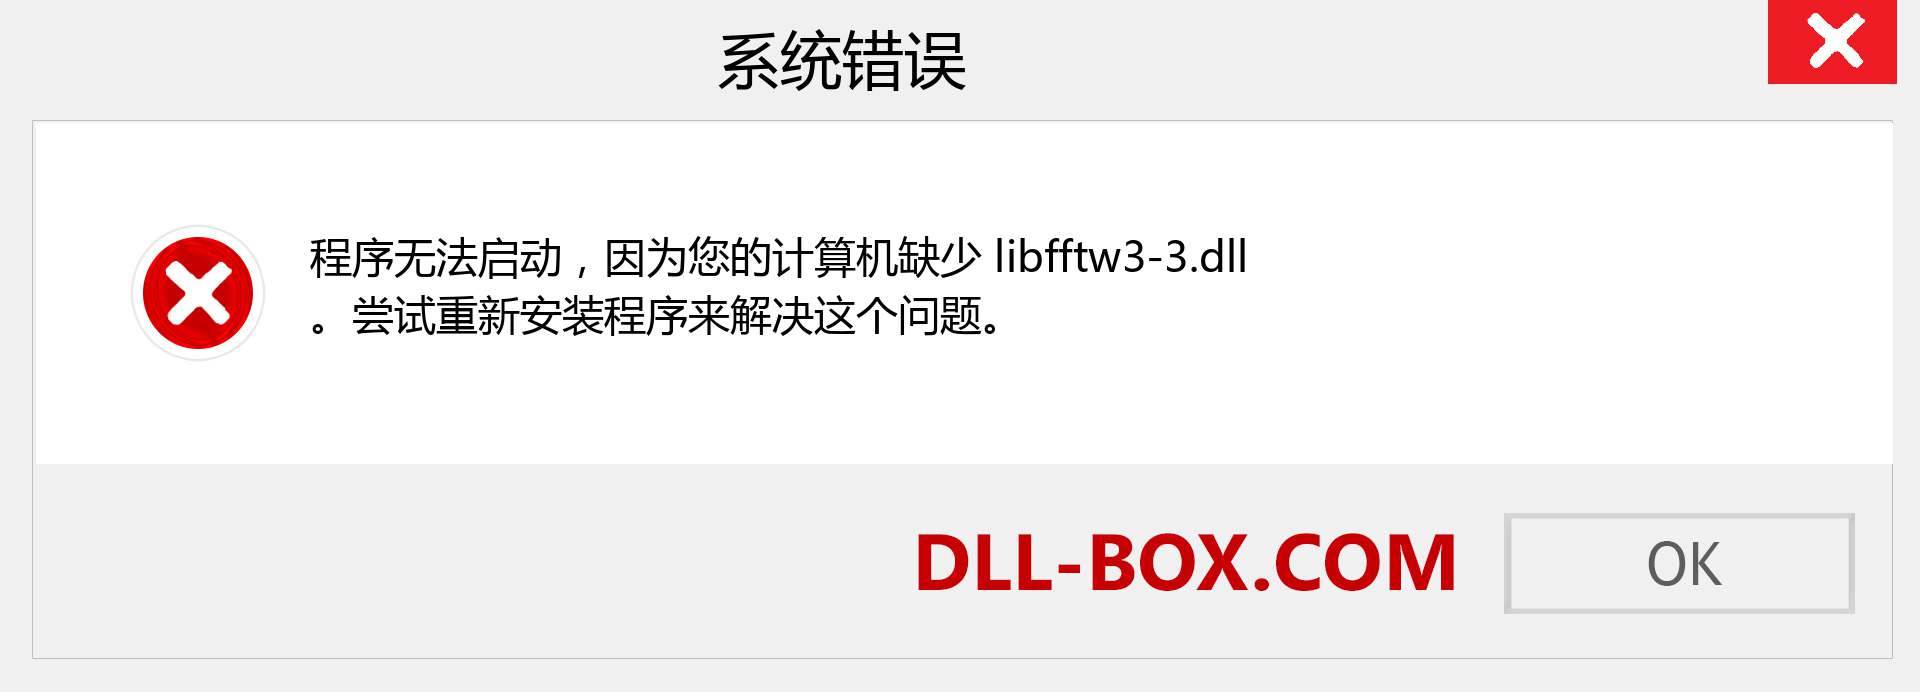 libfftw3-3.dll 文件丢失？。 适用于 Windows 7、8、10 的下载 - 修复 Windows、照片、图像上的 libfftw3-3 dll 丢失错误